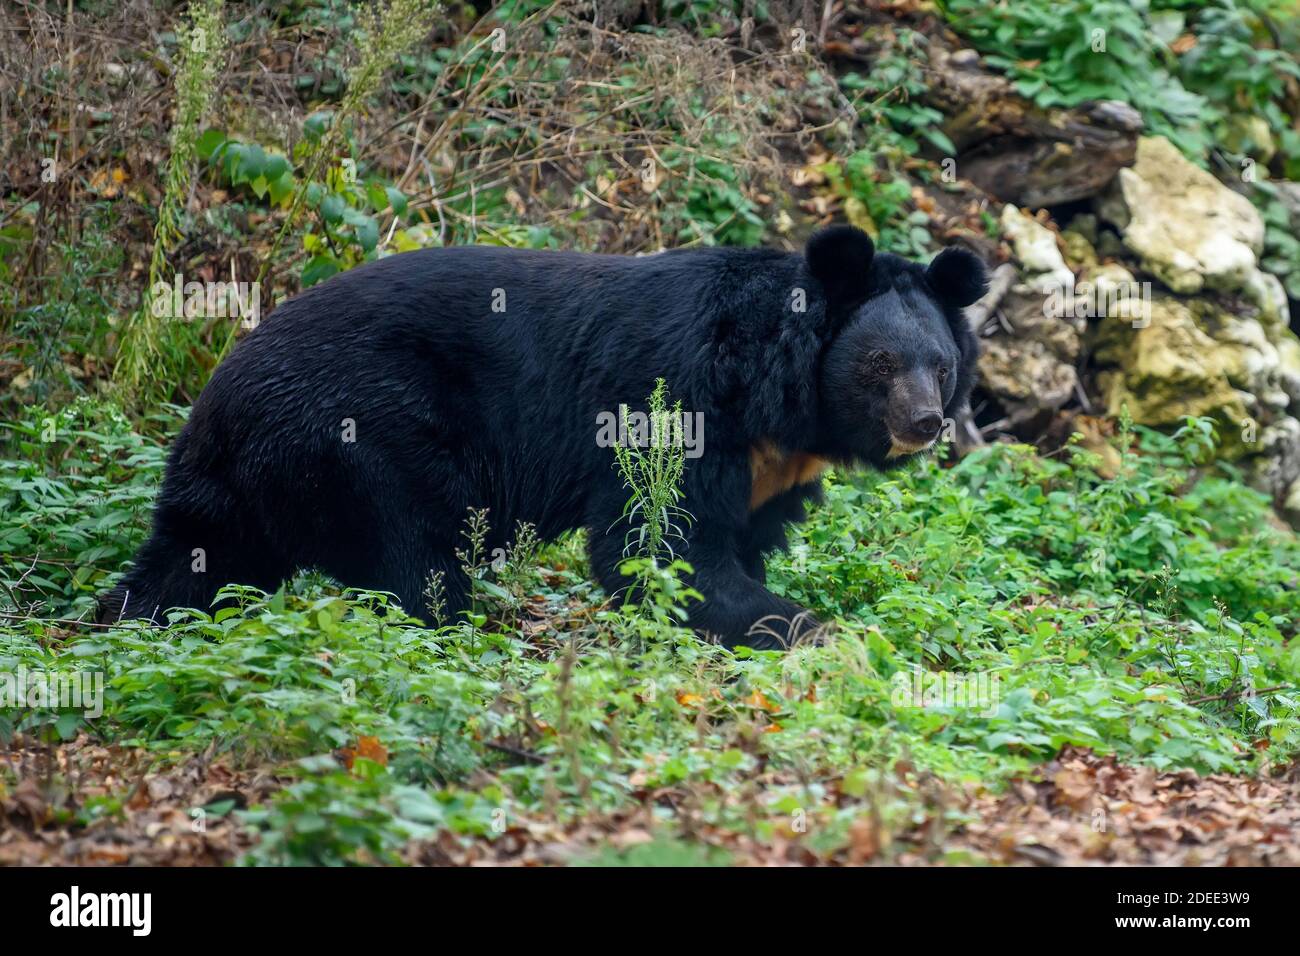 Ours noir asiatique (Ursus thibetanus) dans la forêt d'automne. Scène sauvage de la nature Banque D'Images